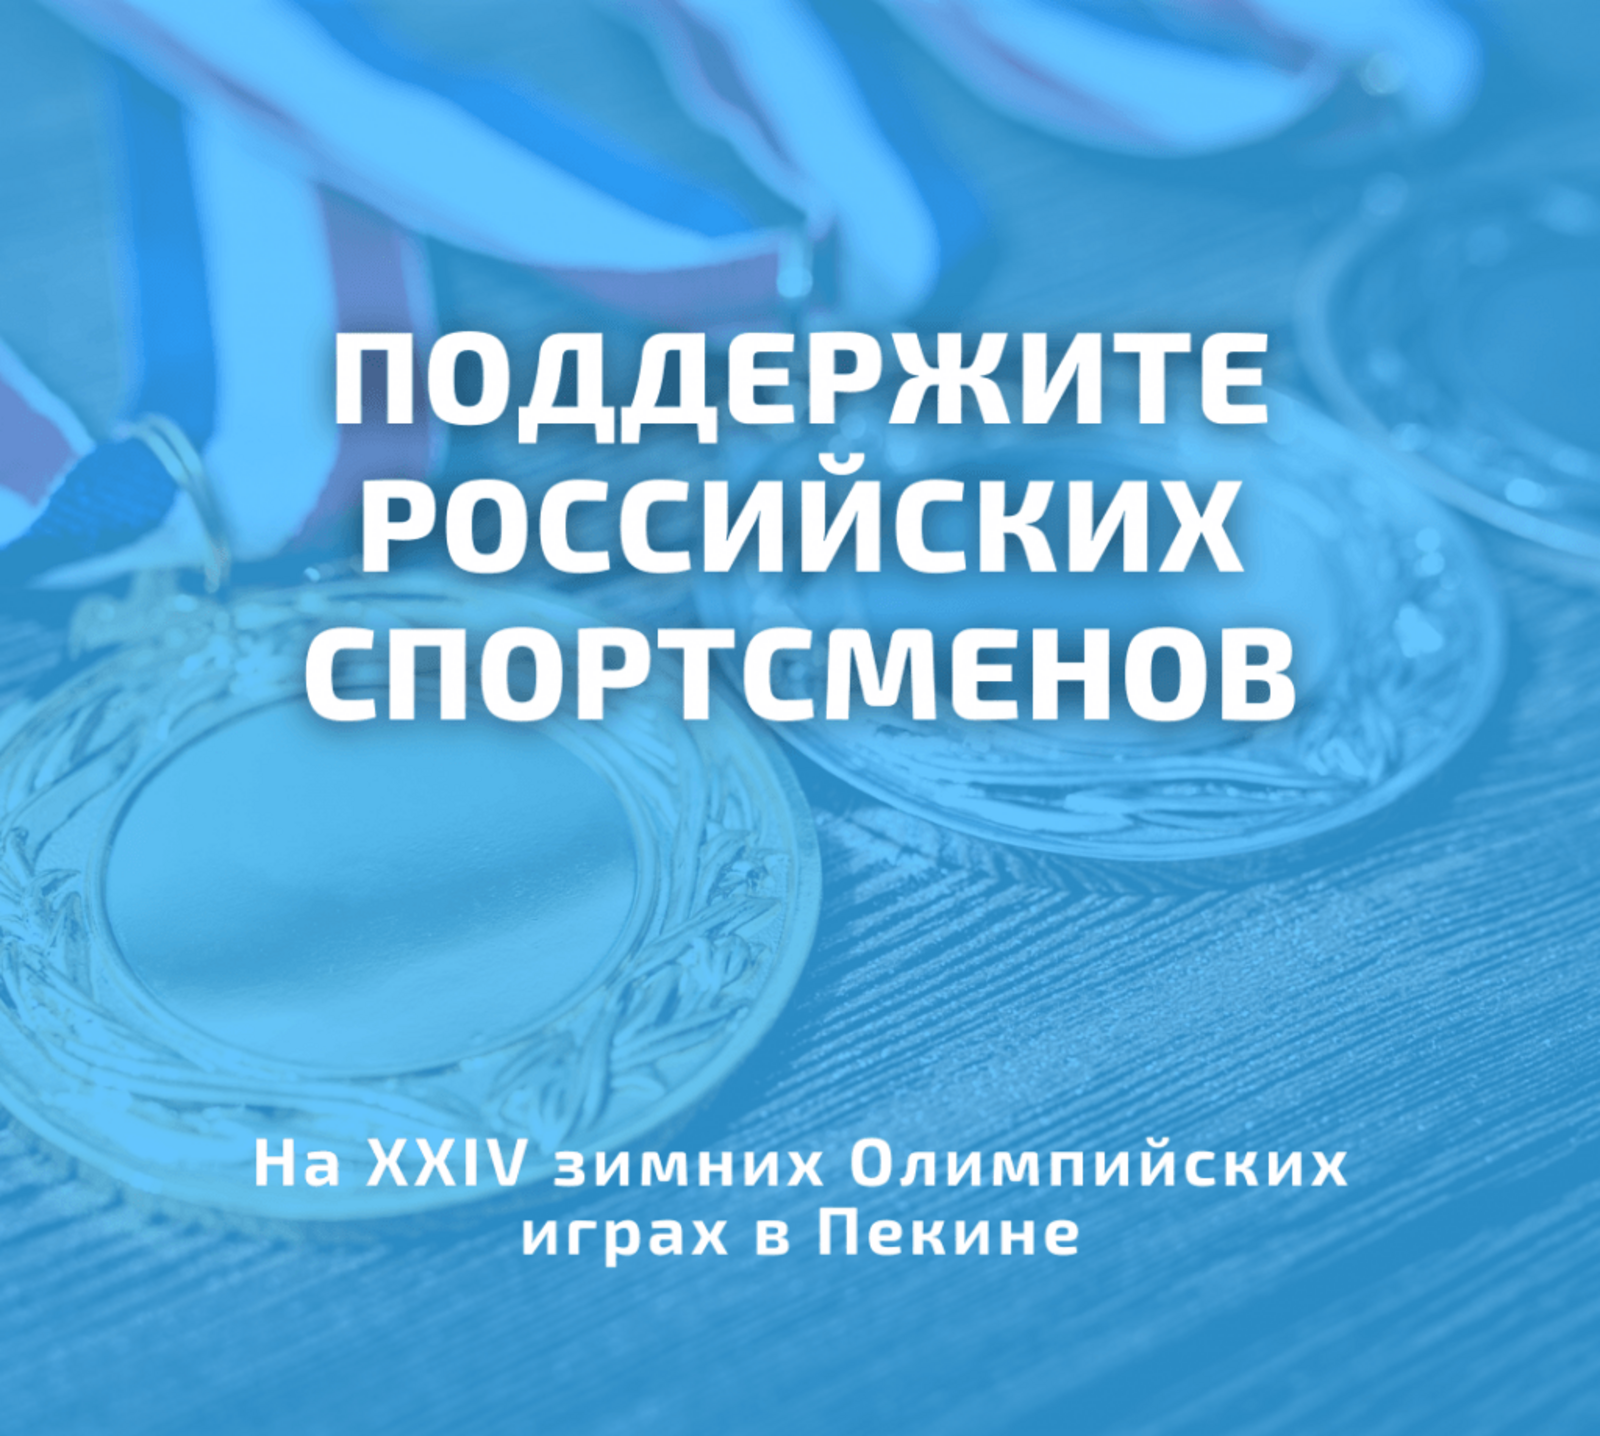 Правительство страны запустило конкурс в поддержку российских спортсменов на Играх в Пекине